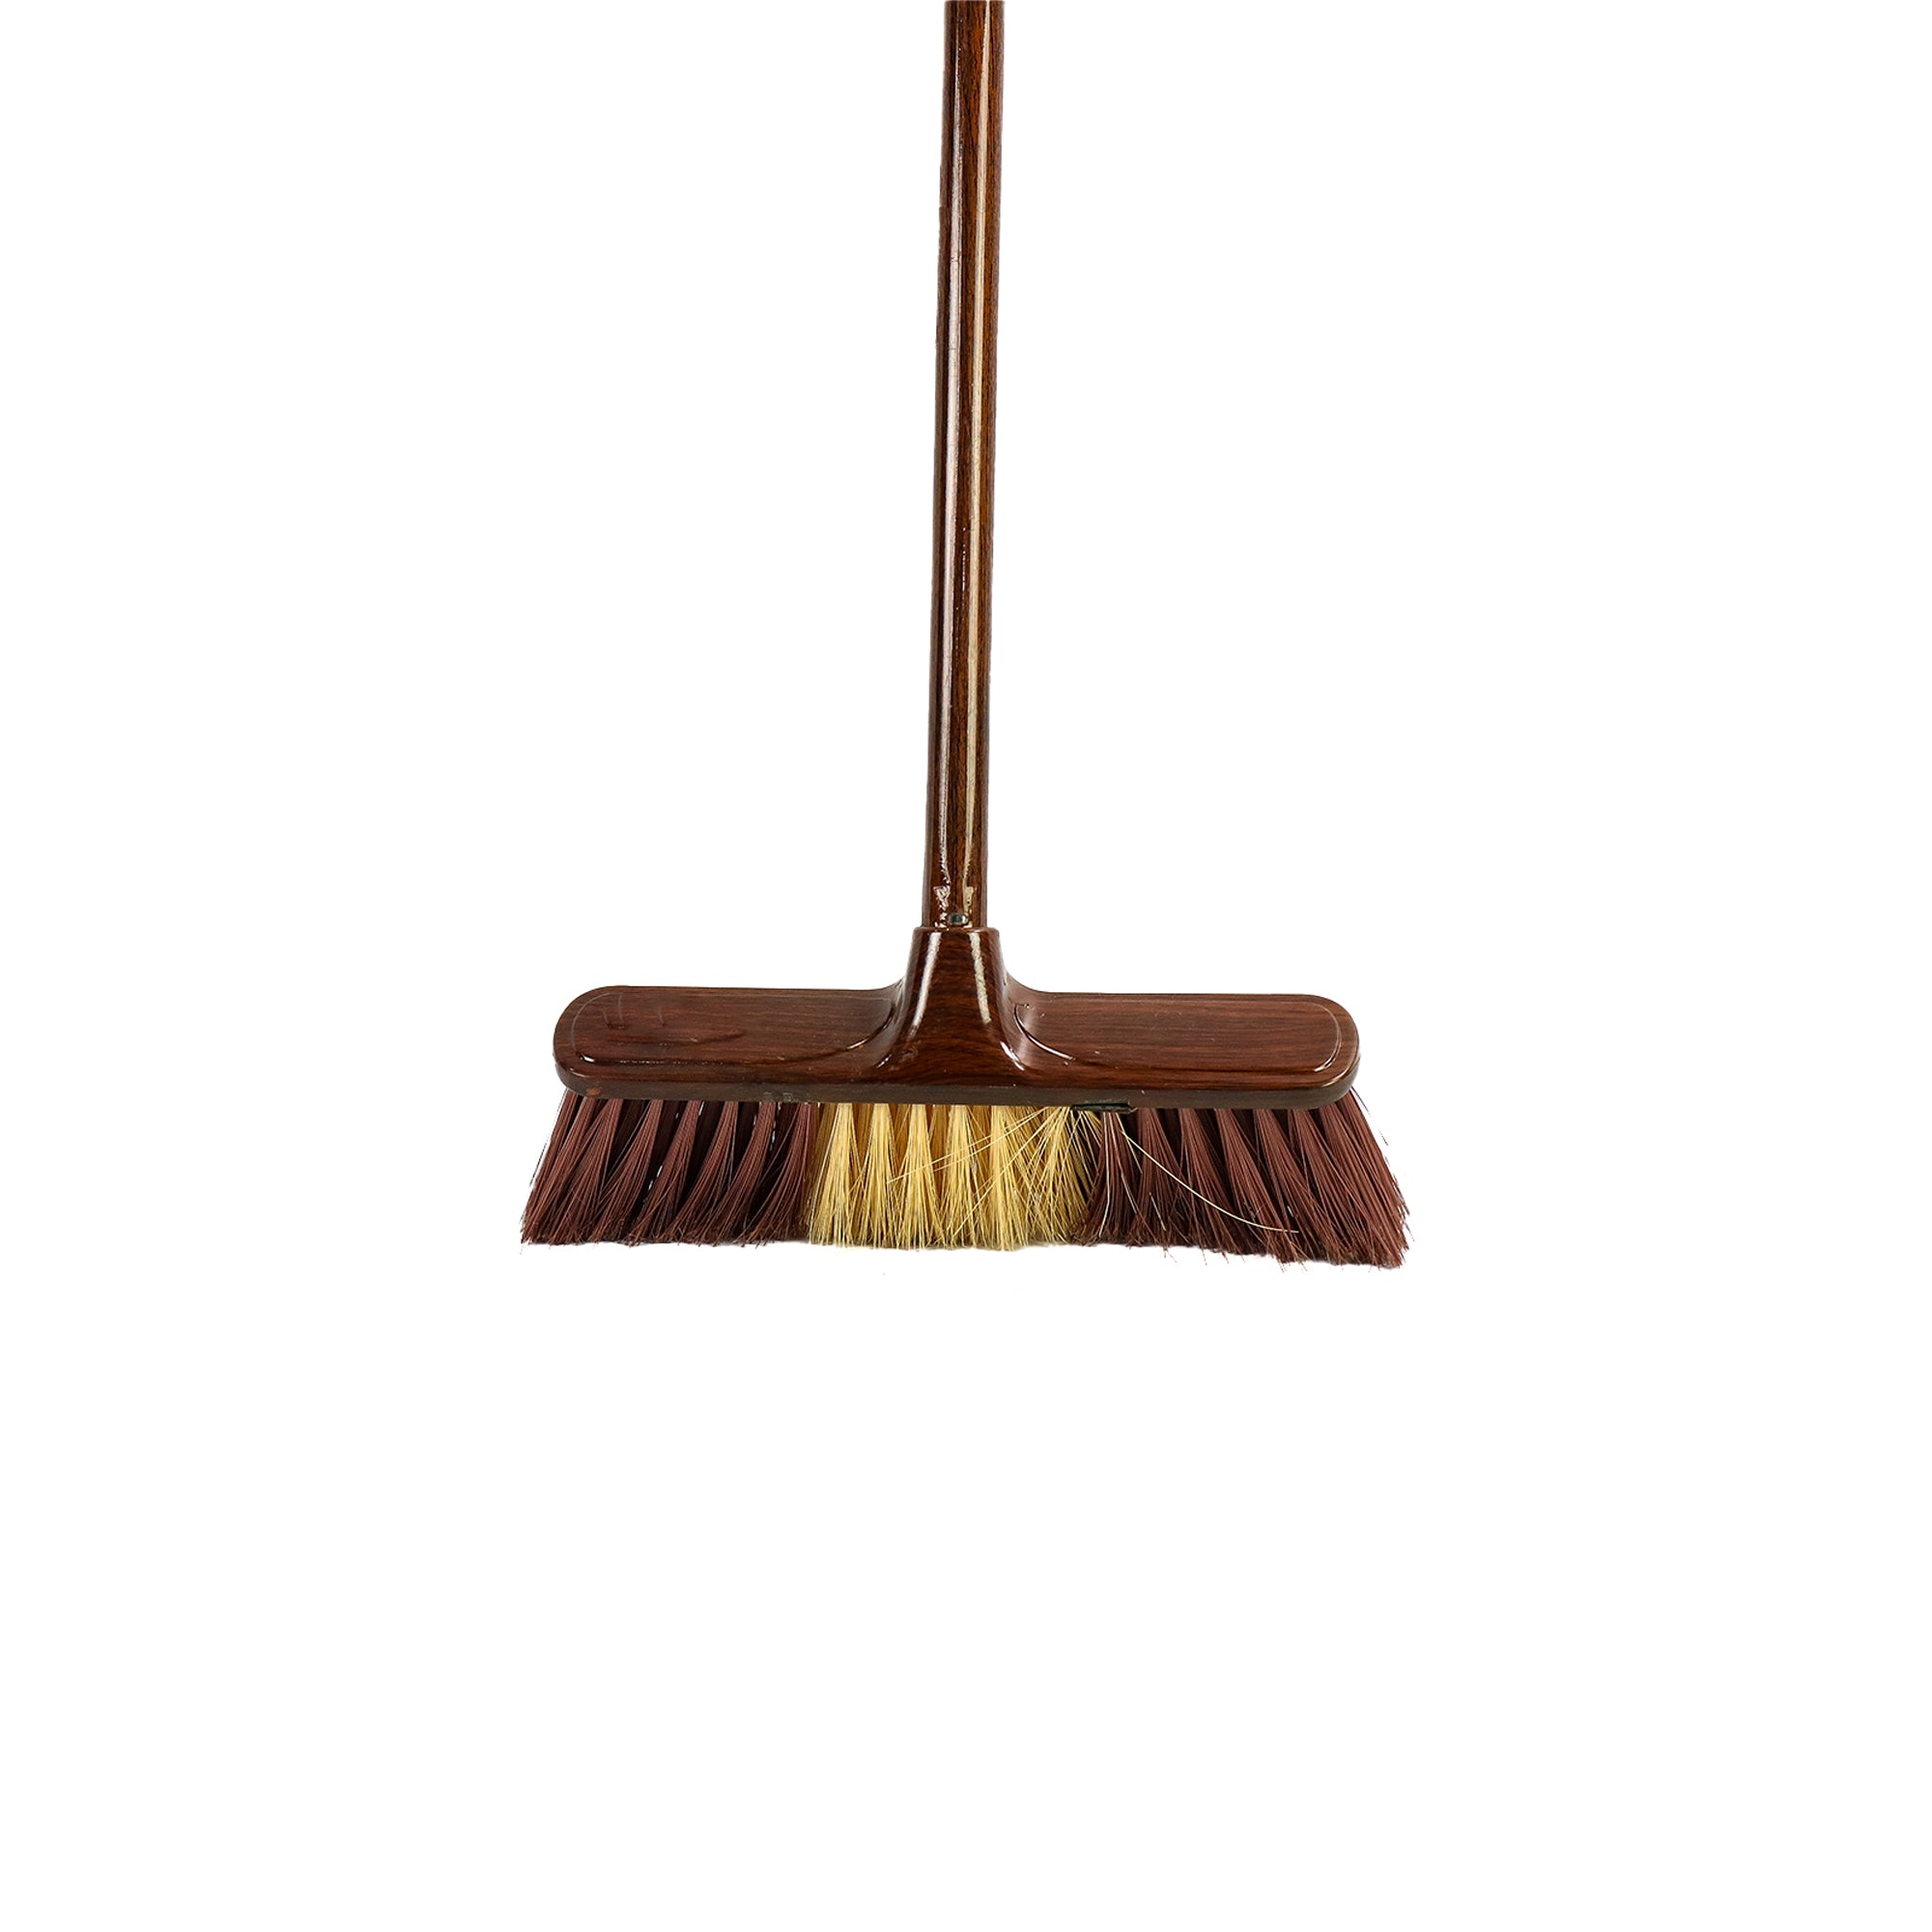 Household Floor Broom with Steel Stick 376